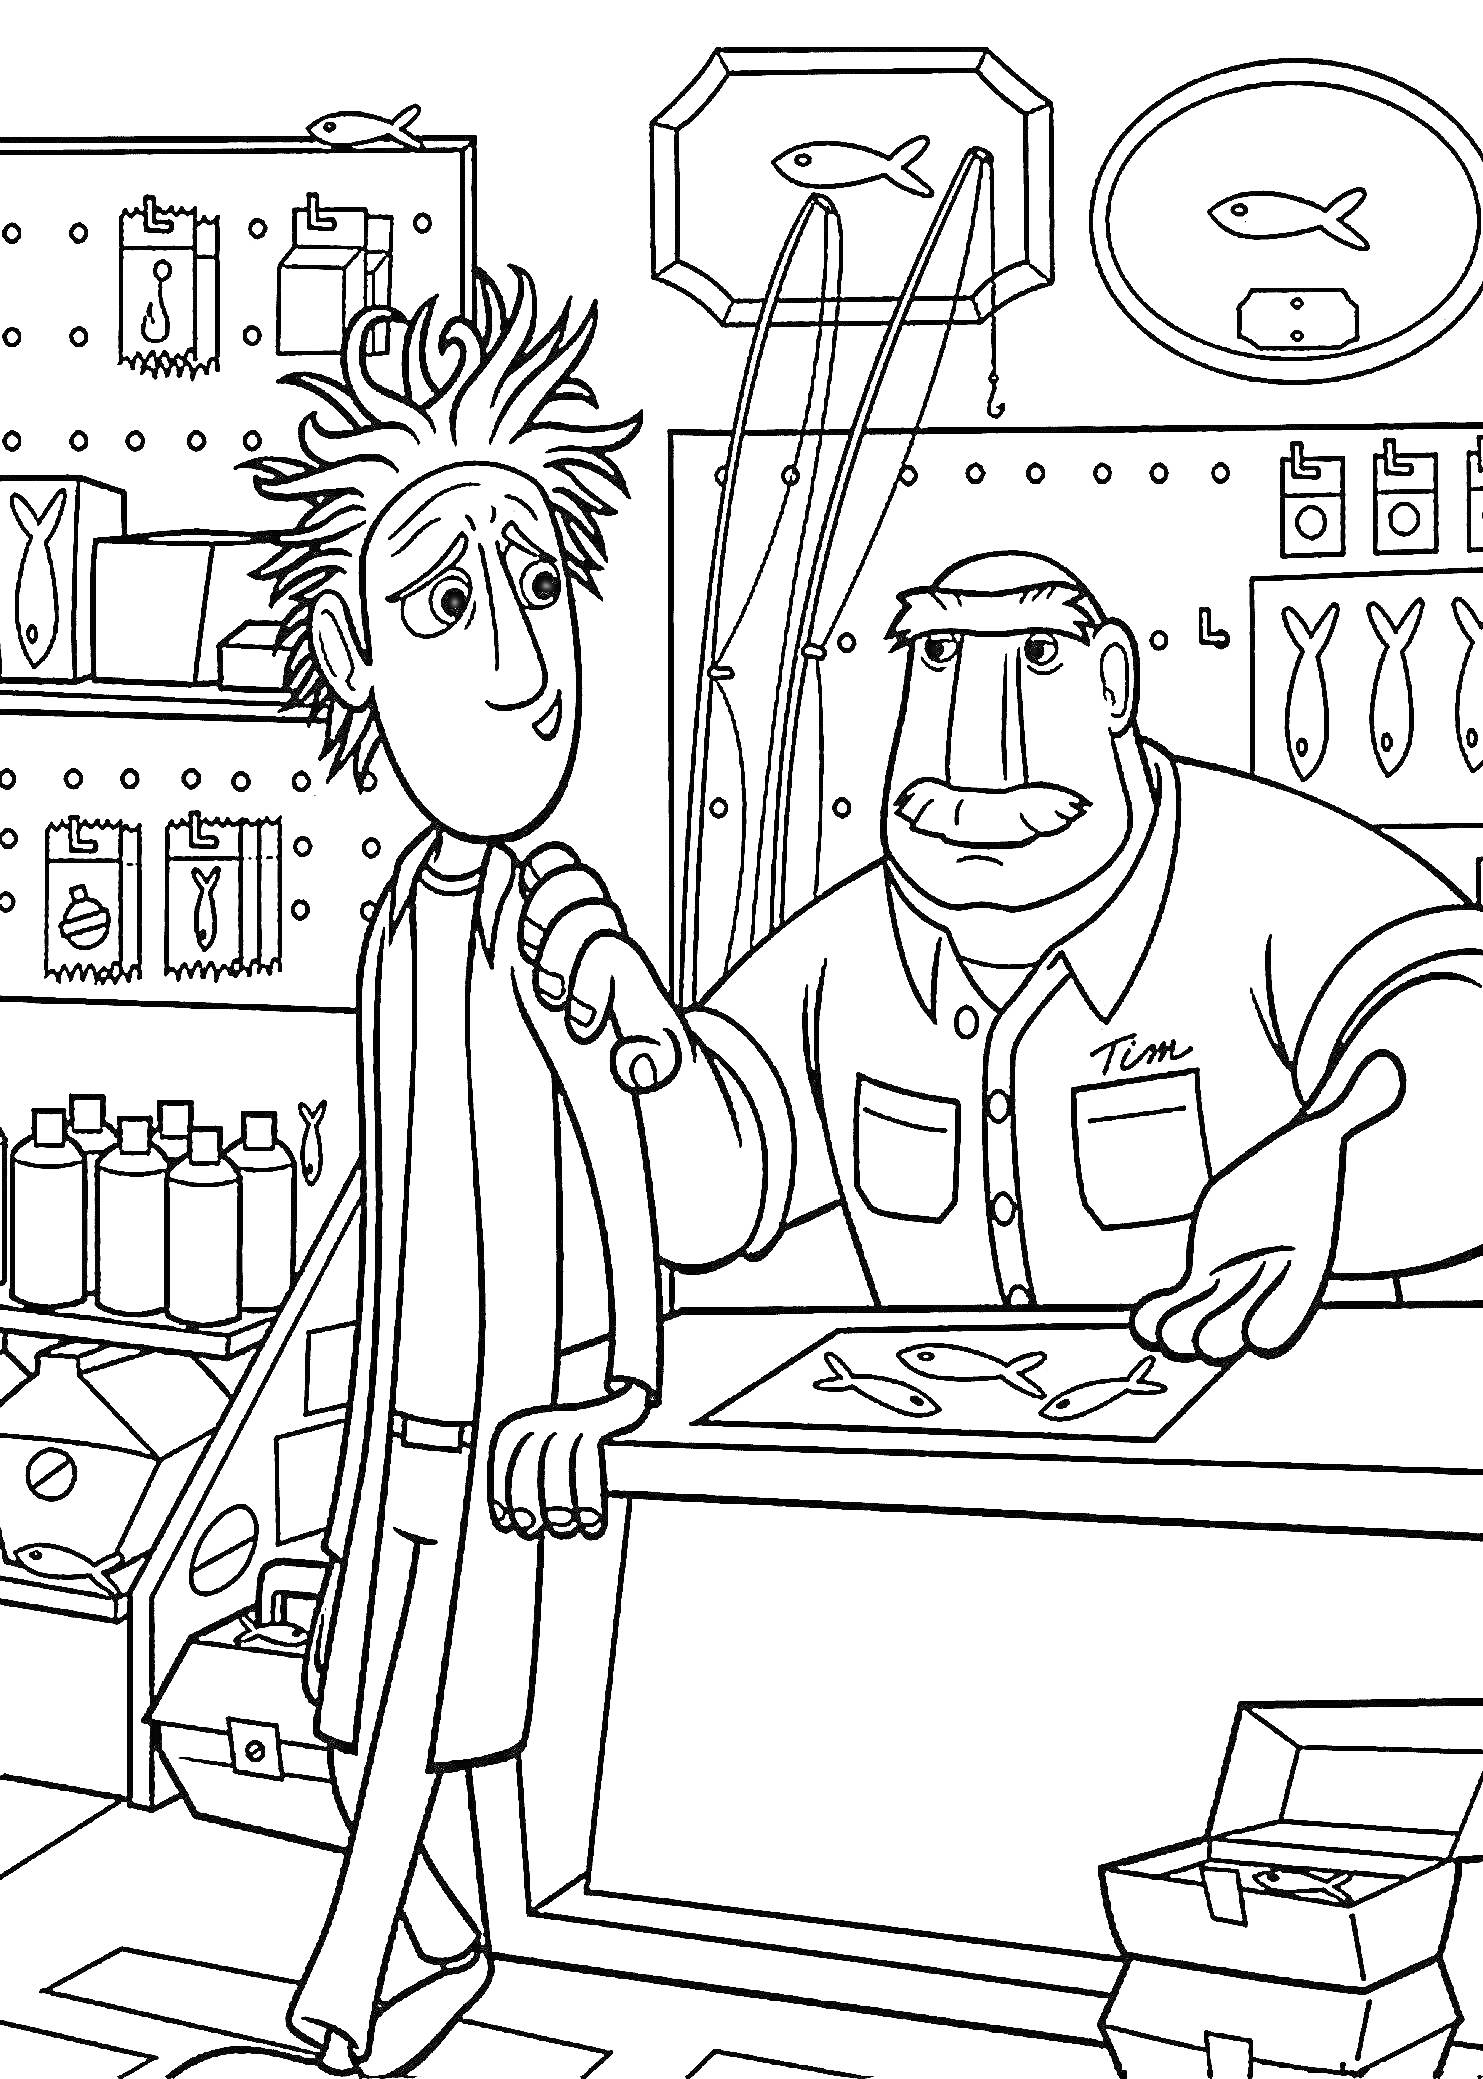 В магазине рыболовных товаров - двое персонажей, полка с аксессуарами, банки на прилавке, рисунок рыбы на стене, коробки на полу